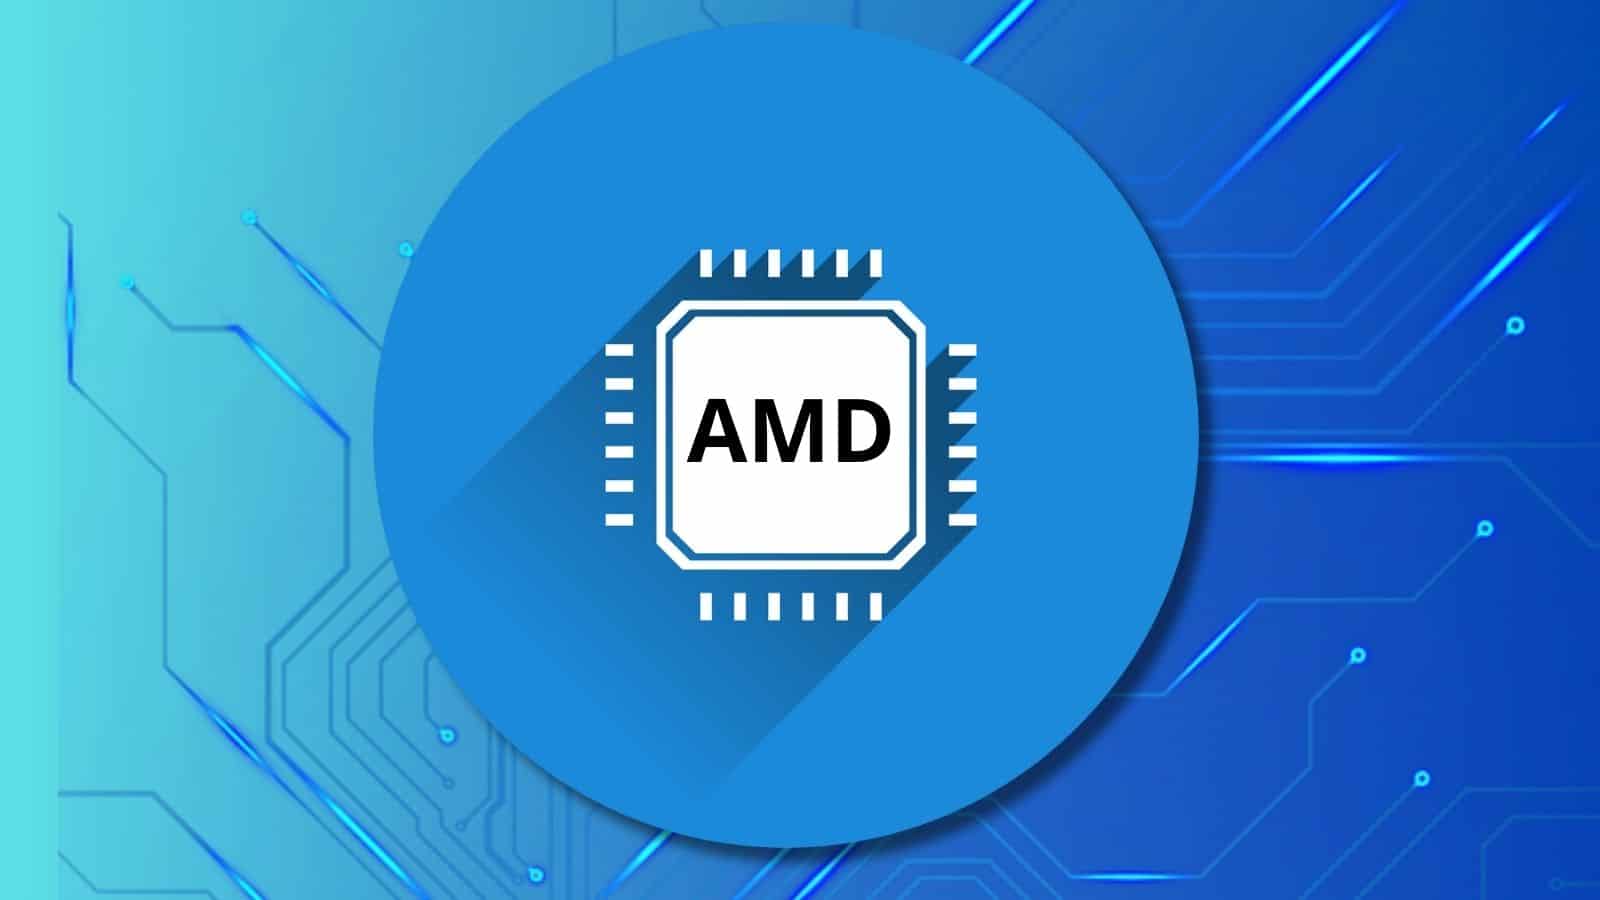 AMD alza l'asticella dell'efficienza energetica: 100 volte migliore